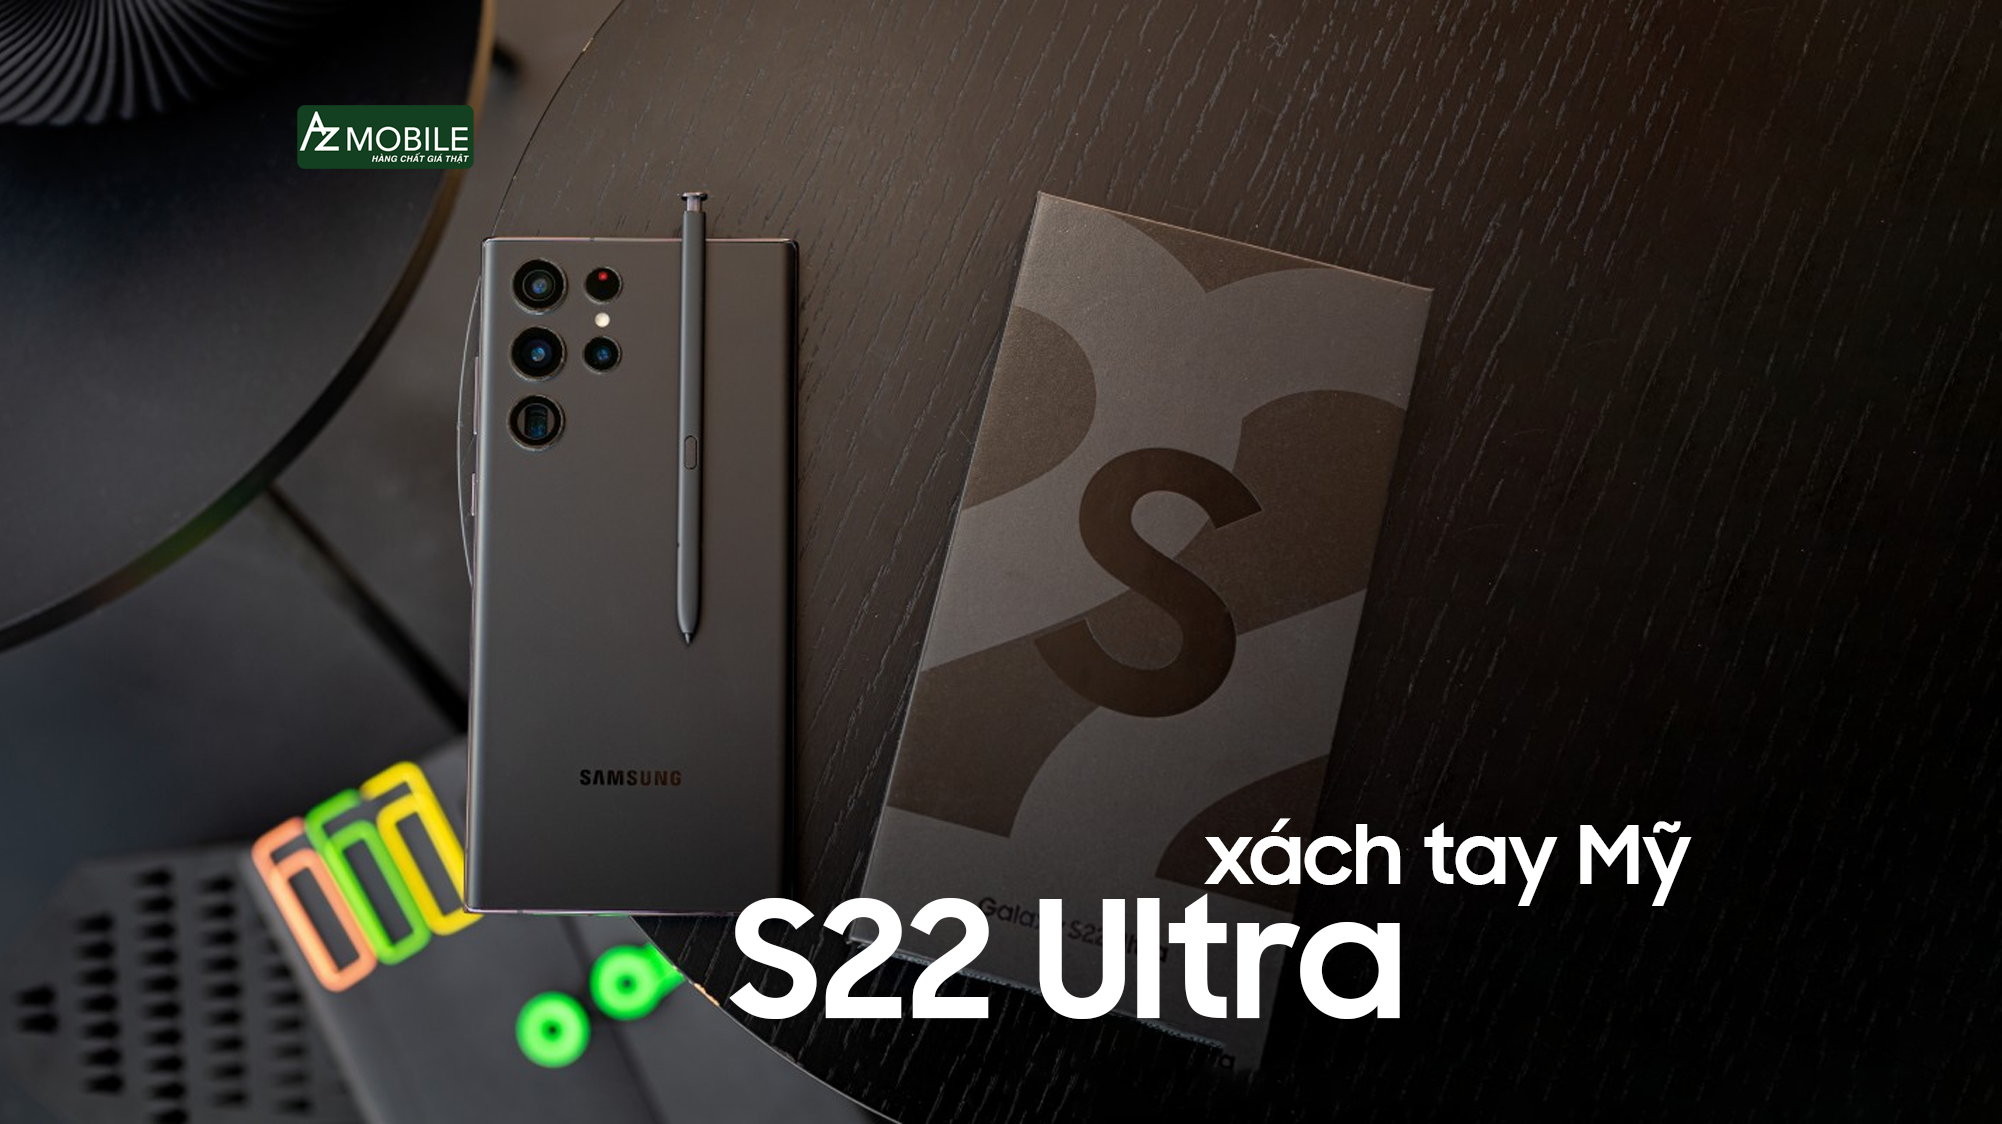 Trải nghiệm sử dụng Samsung S22 Ultra xách tay Mỹ và gợi ý địa chỉ bán điện thoại uy tín